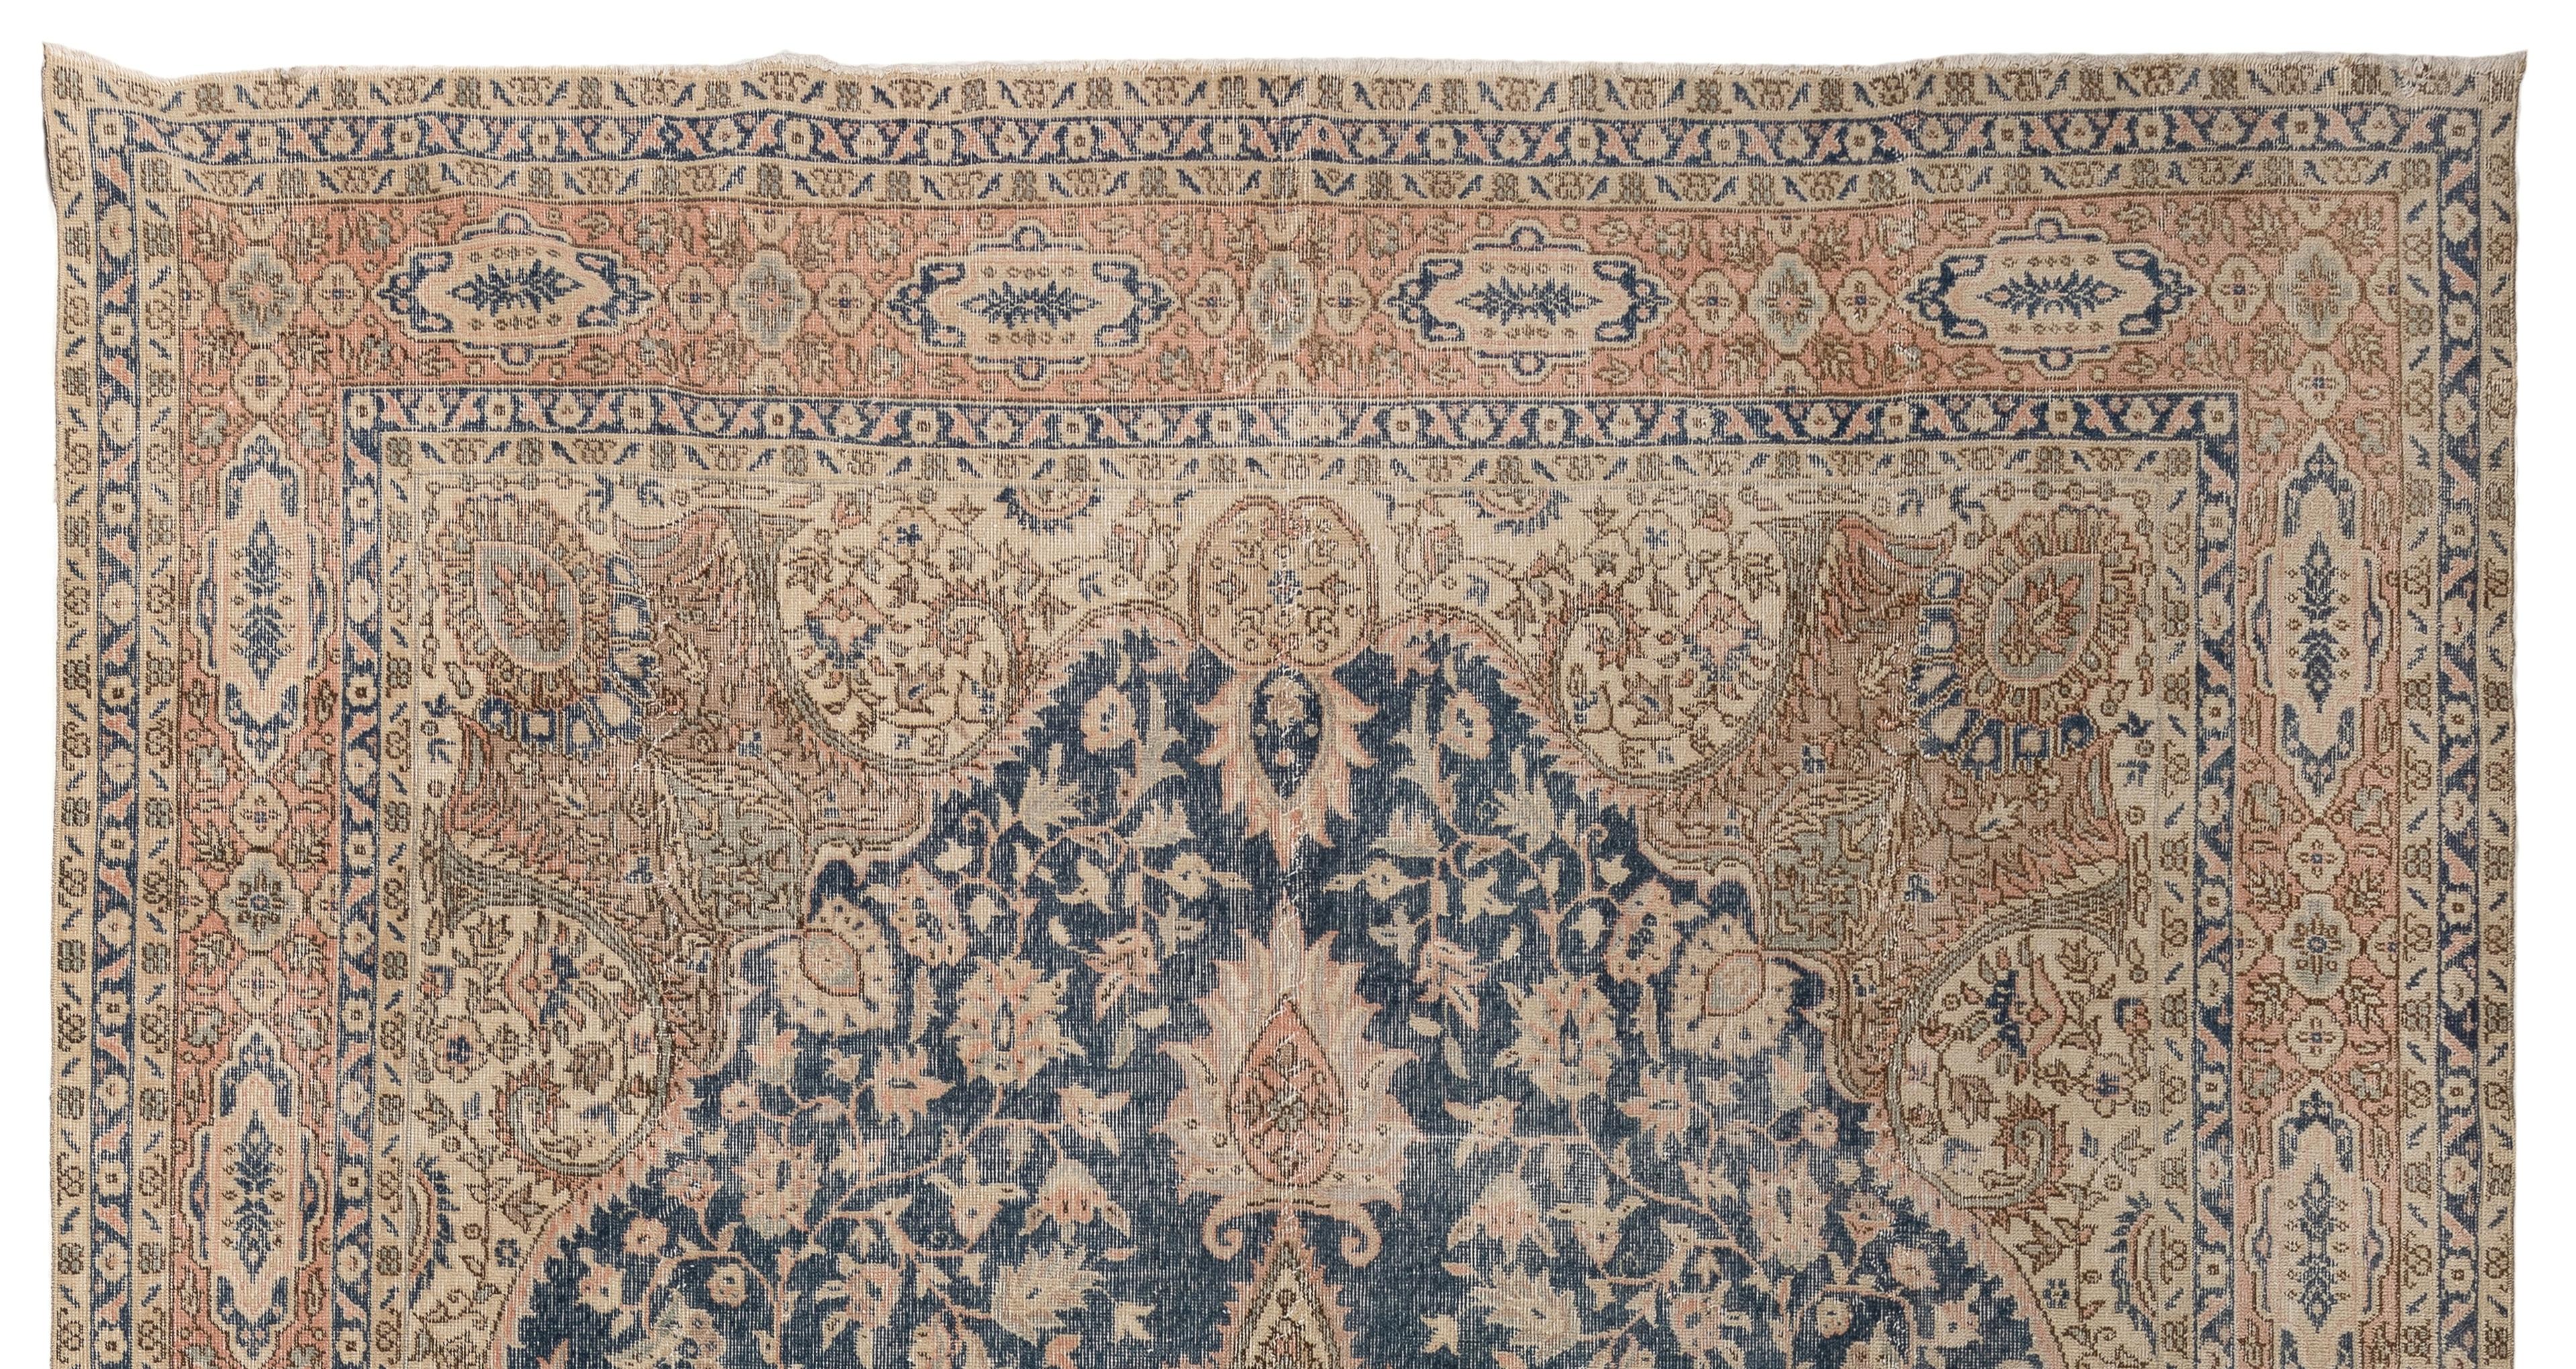 Ein sehr feiner handgeknüpfter großer Vintage-Teppich aus der Türkei in einer Farbpalette aus Steinbeige, Lachsrosa, Hellblau und Marineblau. Das komplizierte Design ist sehr gekonnt ausgeführt, vom geschwungenen Medaillon bis zum ähnlich geformten